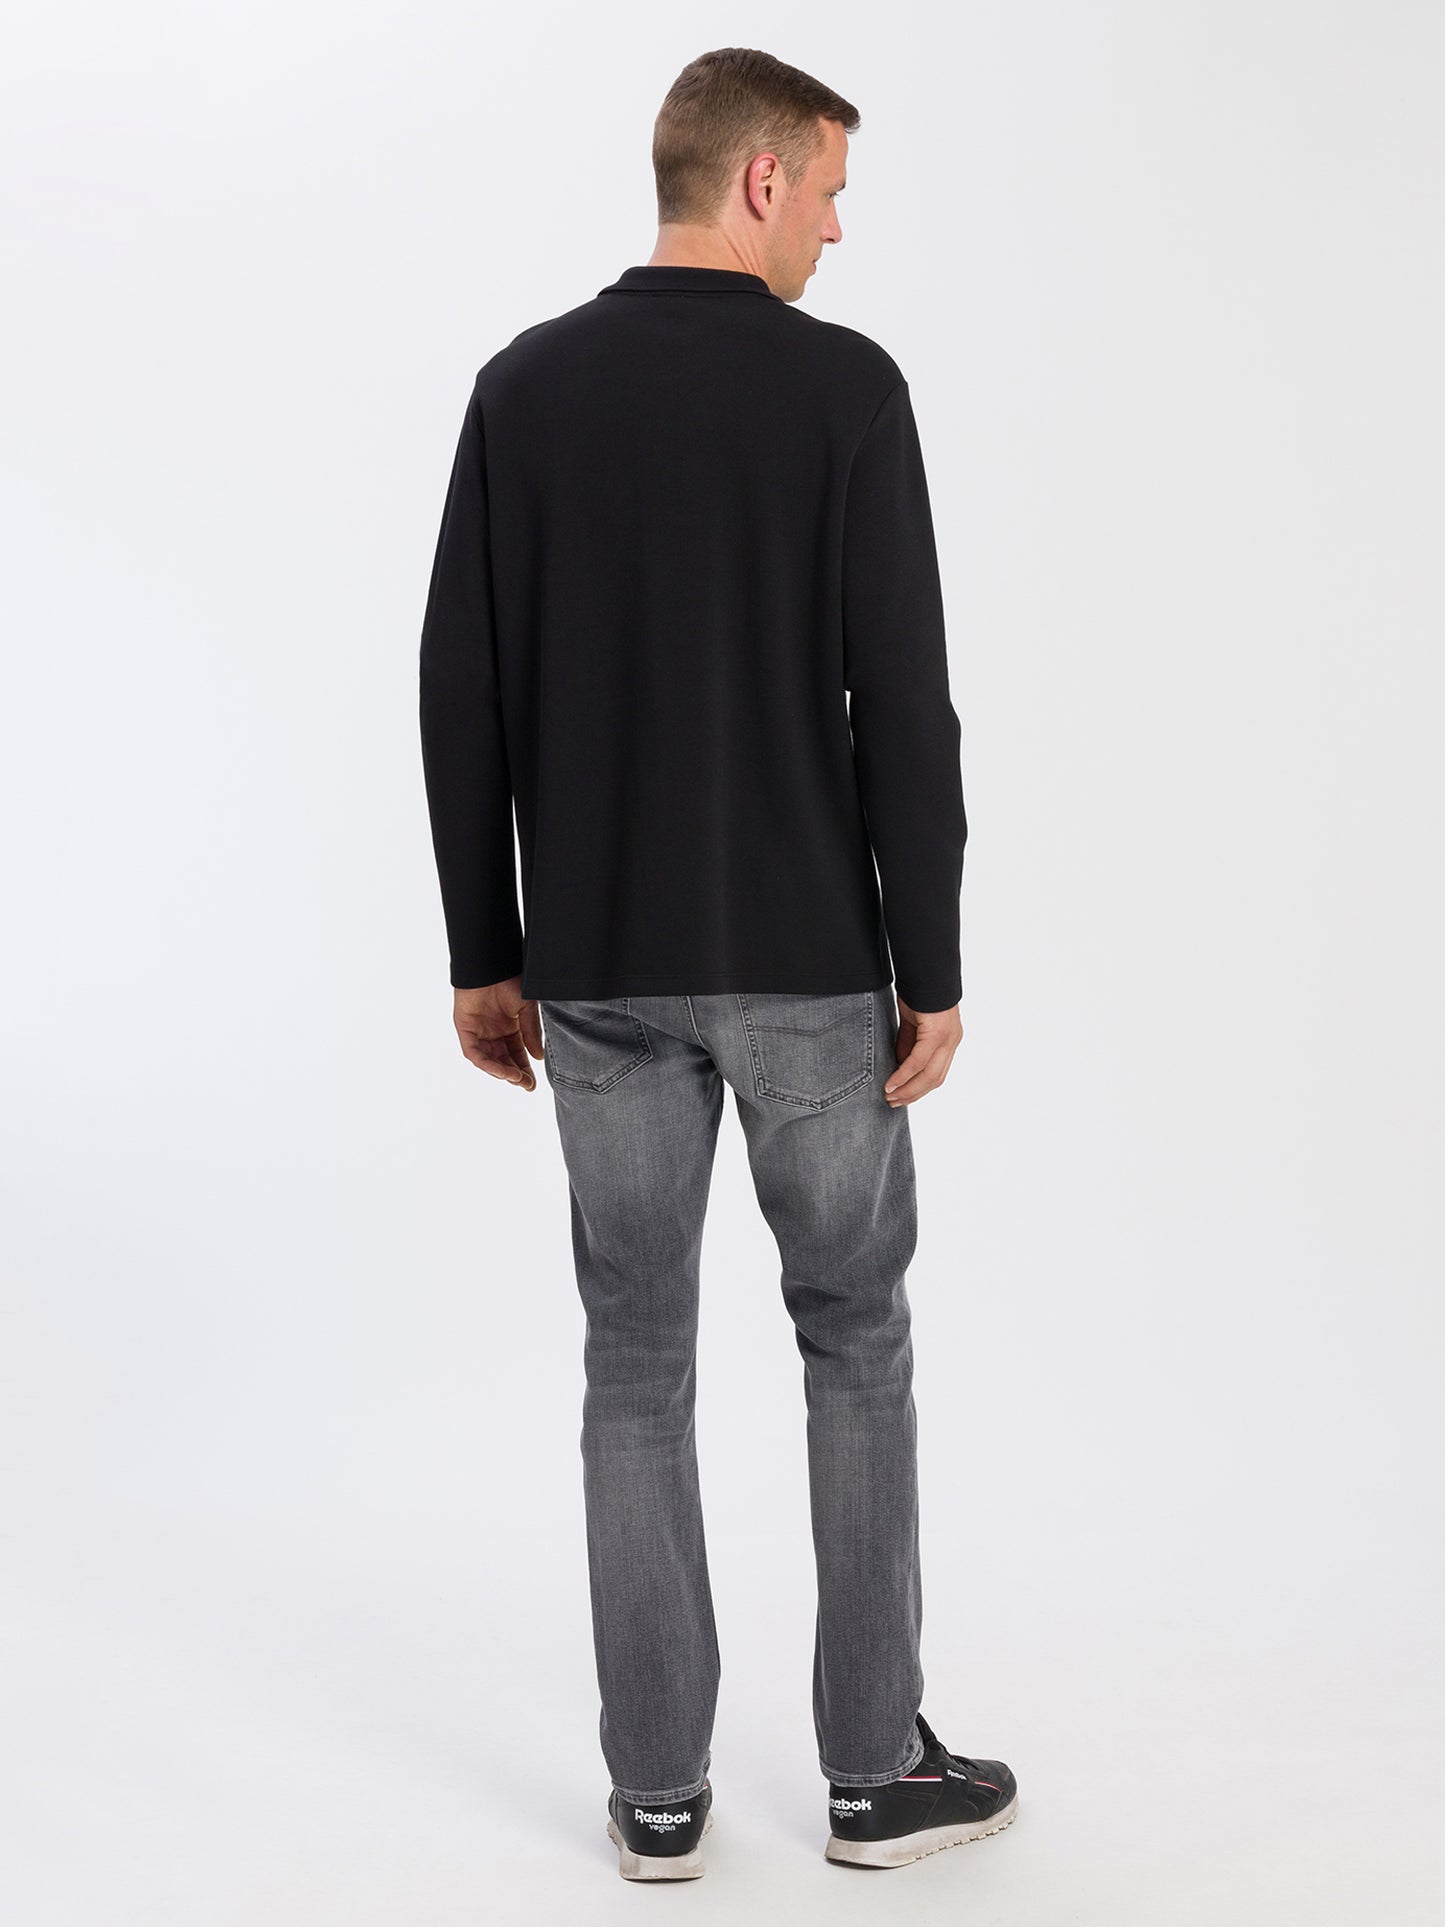 Men's regular long-sleeved polo shirt with logo black